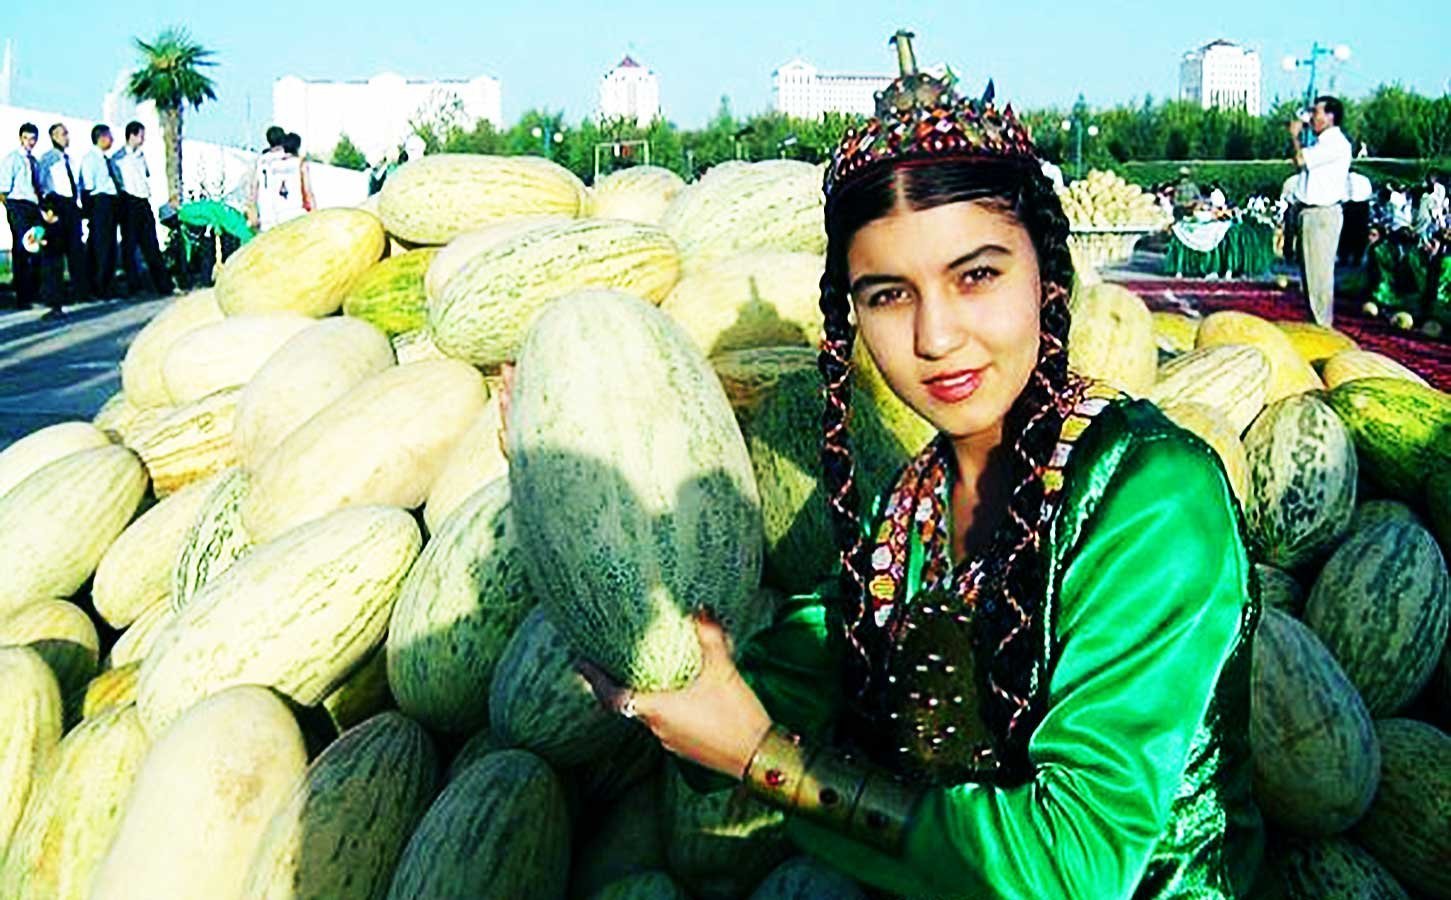 Узбекская туркменская. Туркменистан,дыни, бахчи. Сорт дыни вахарман туркменский. Праздник дыни Ашхабад. Туркменистан Туркмен туркменка.